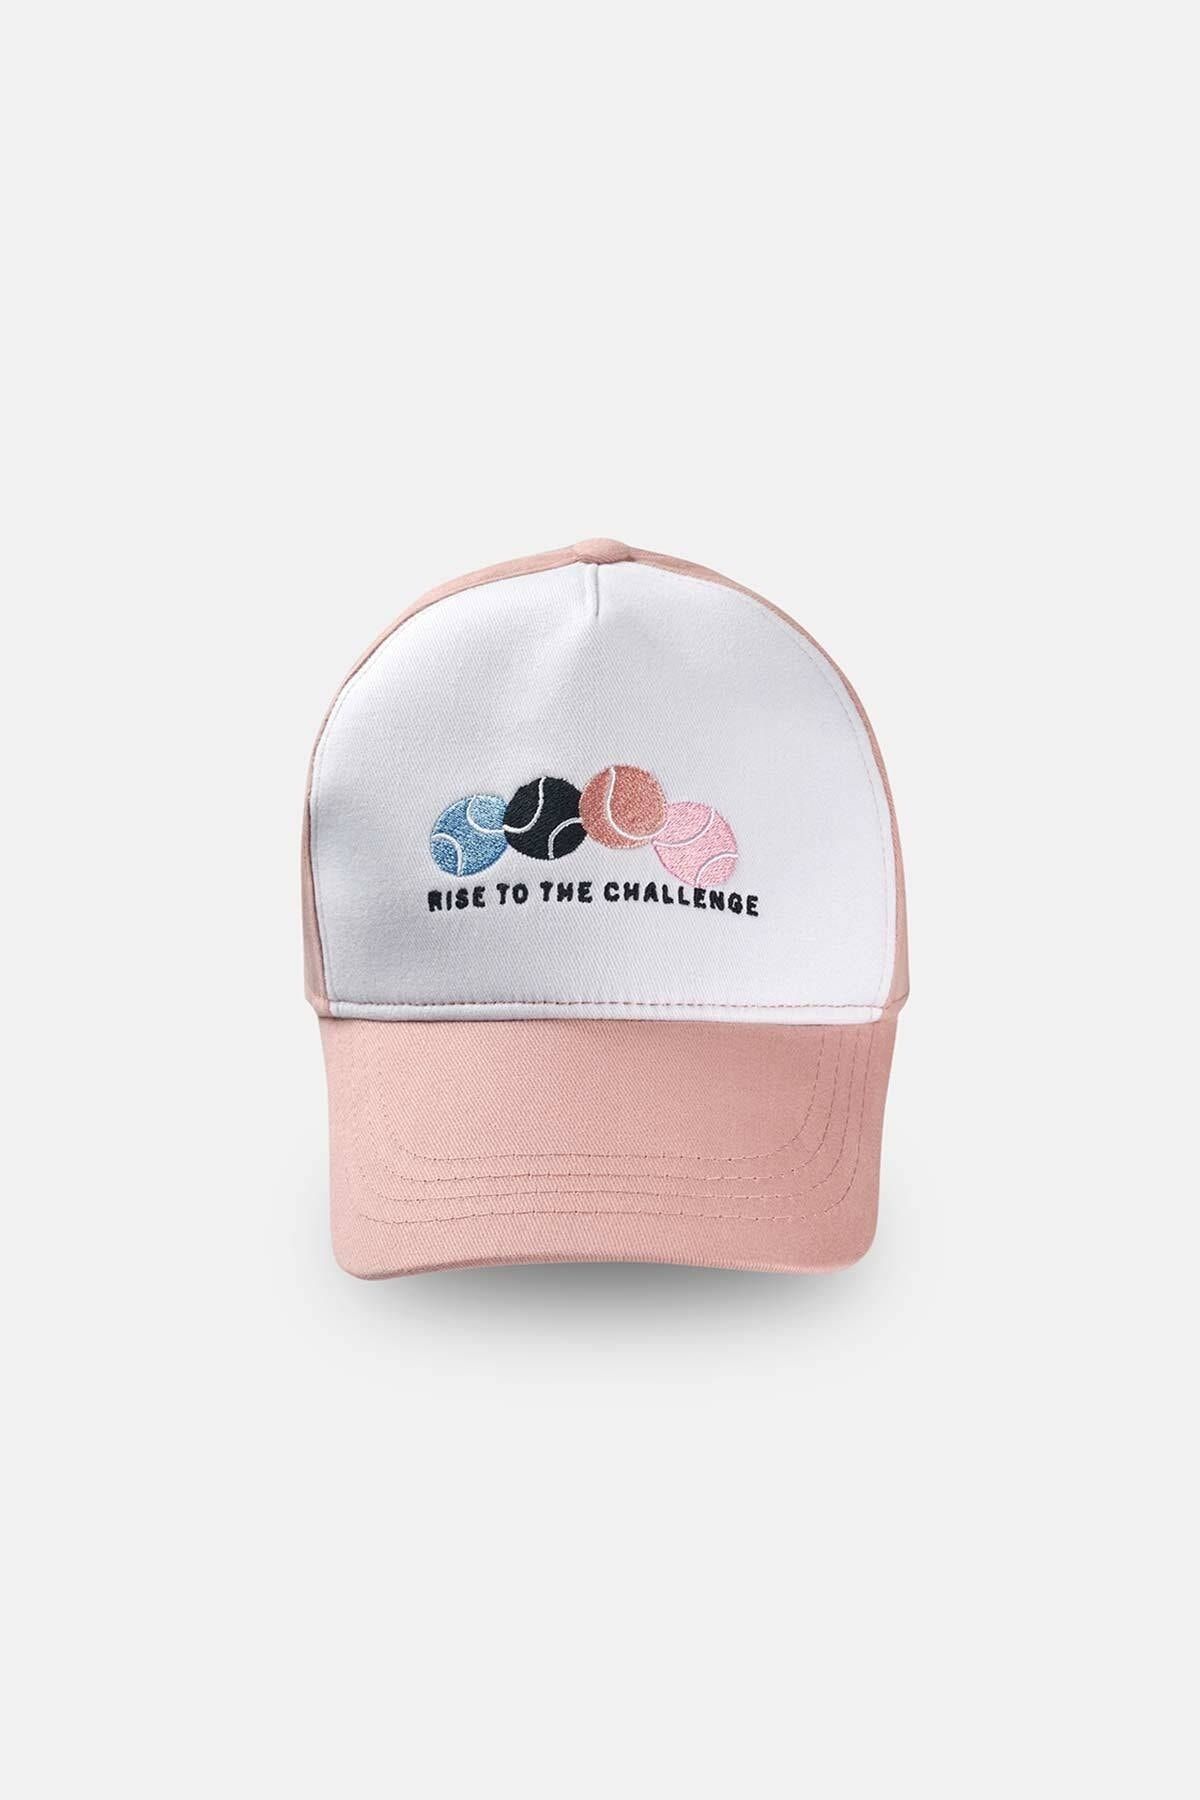 Dagi Pembe Kadın Tenis Kep Şapka